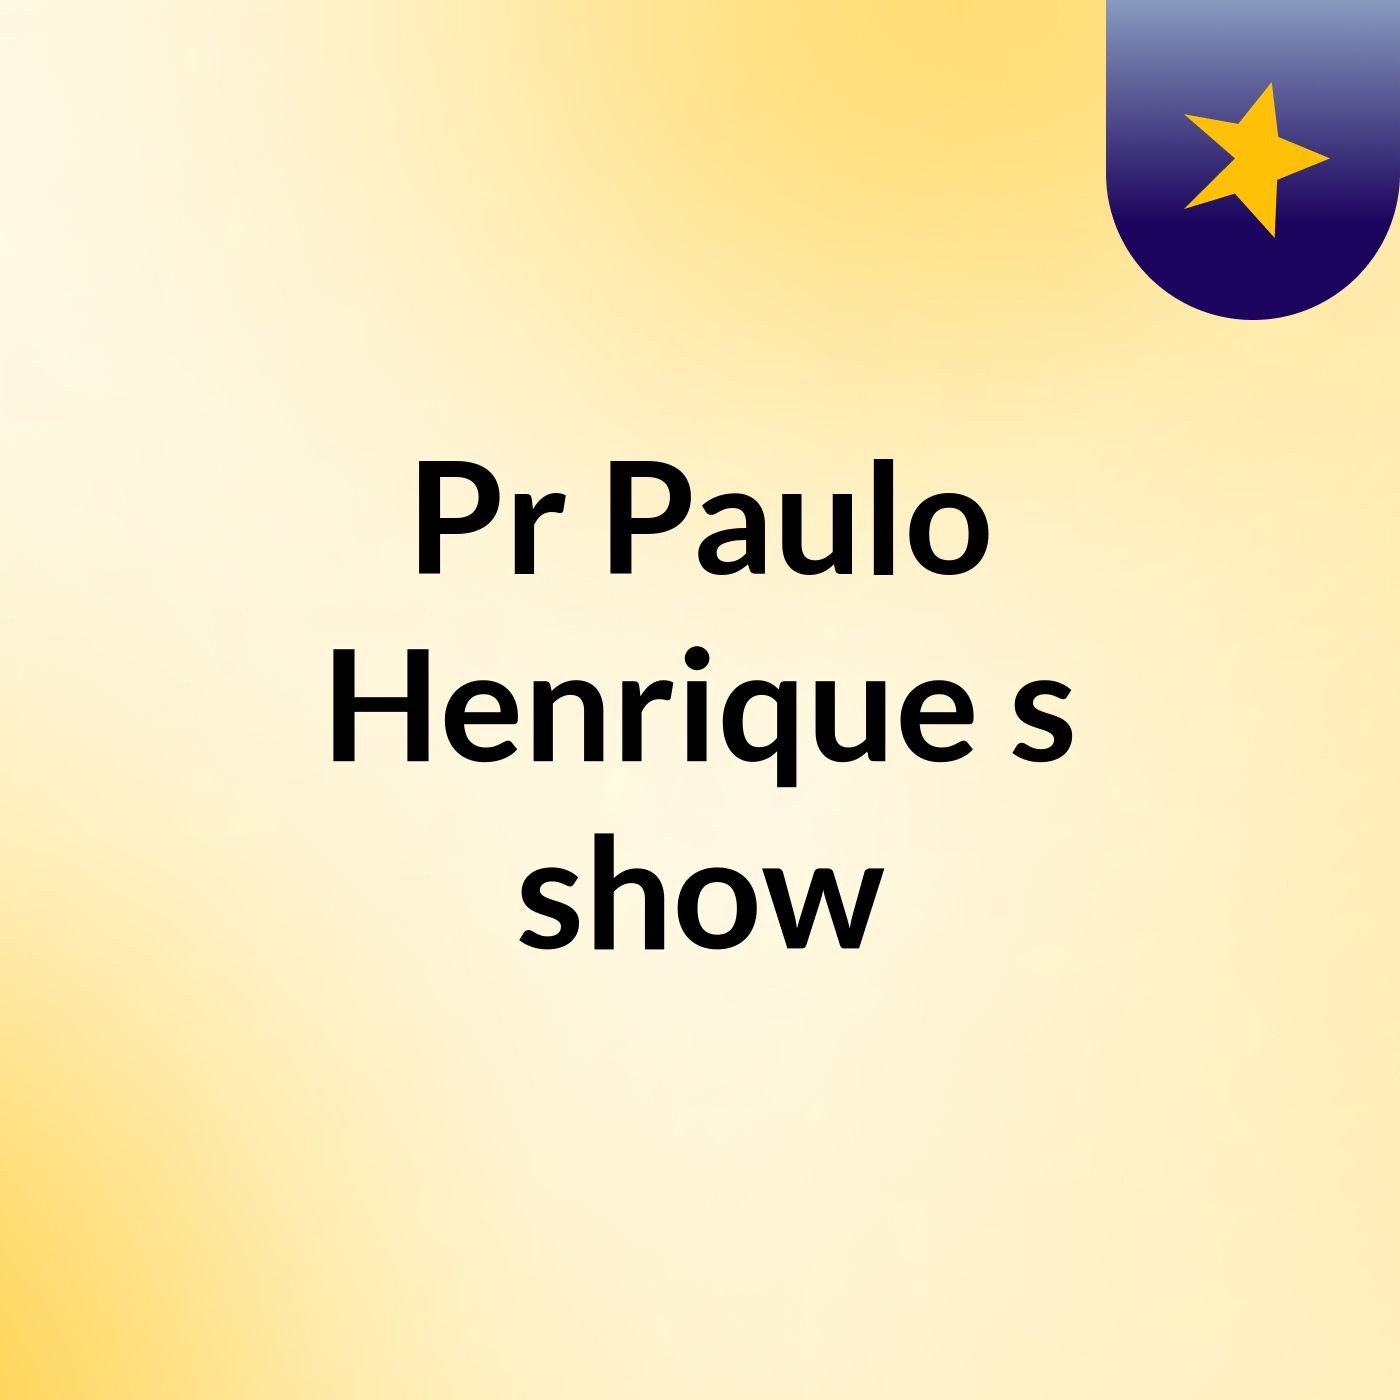 Pr Paulo Henrique's show